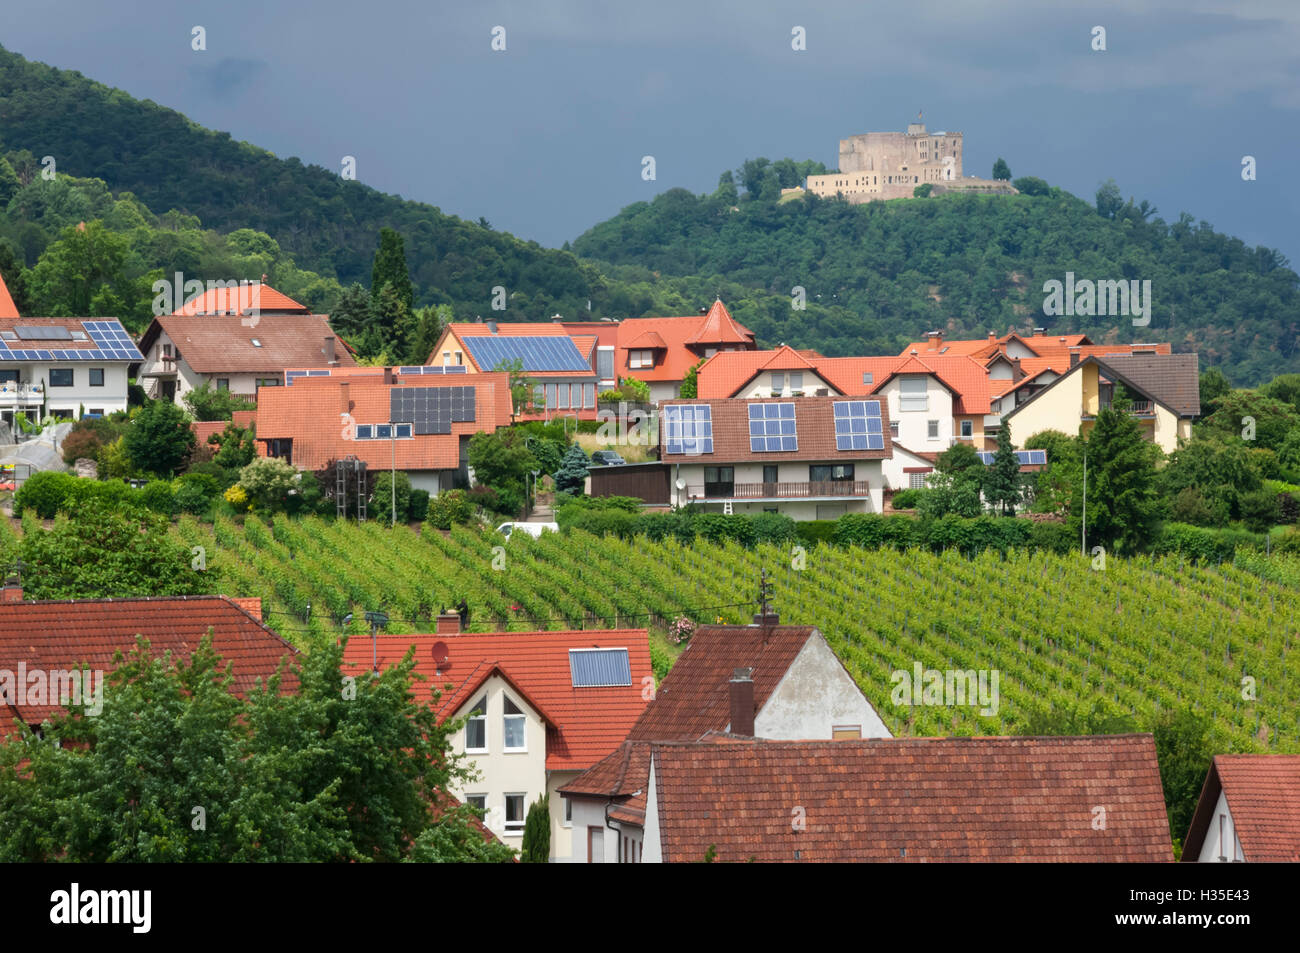 Pueblo de San Martín entre viñedos en la zona de Pfalz, Alemania Foto de stock